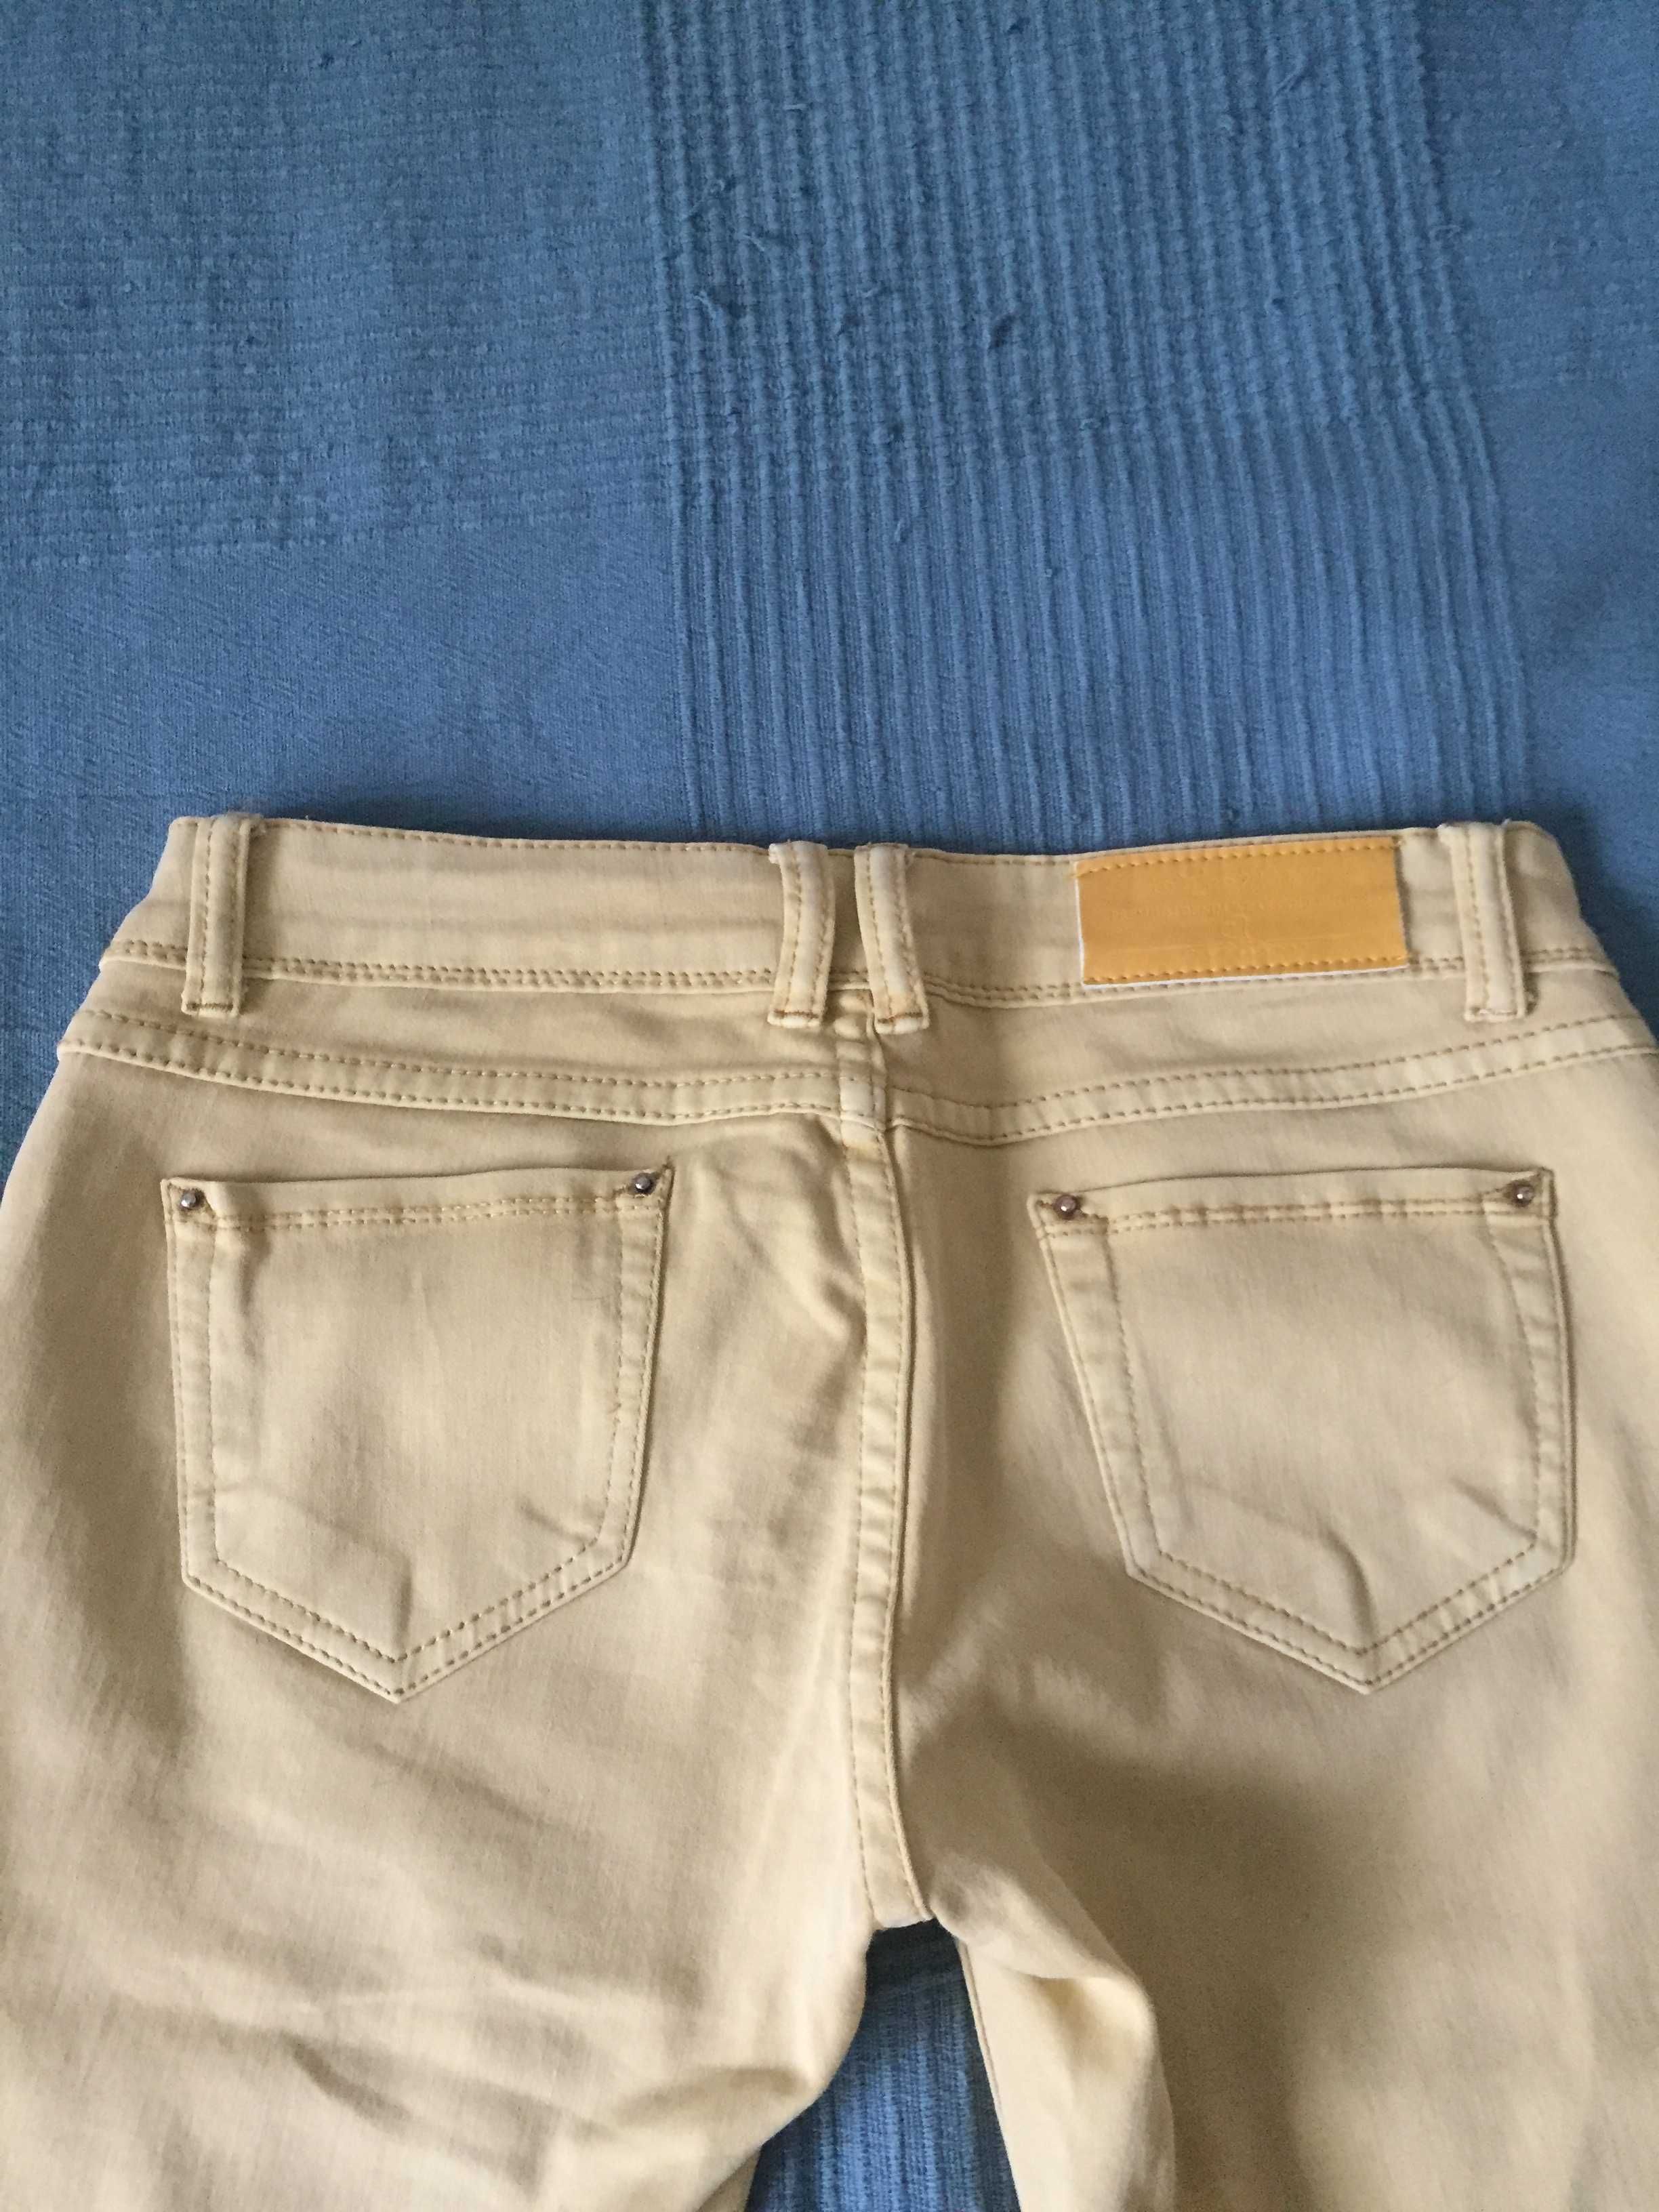 Damskie spodnie , jeansy , jasno żółte rurki , M/10 , R.Jonaco